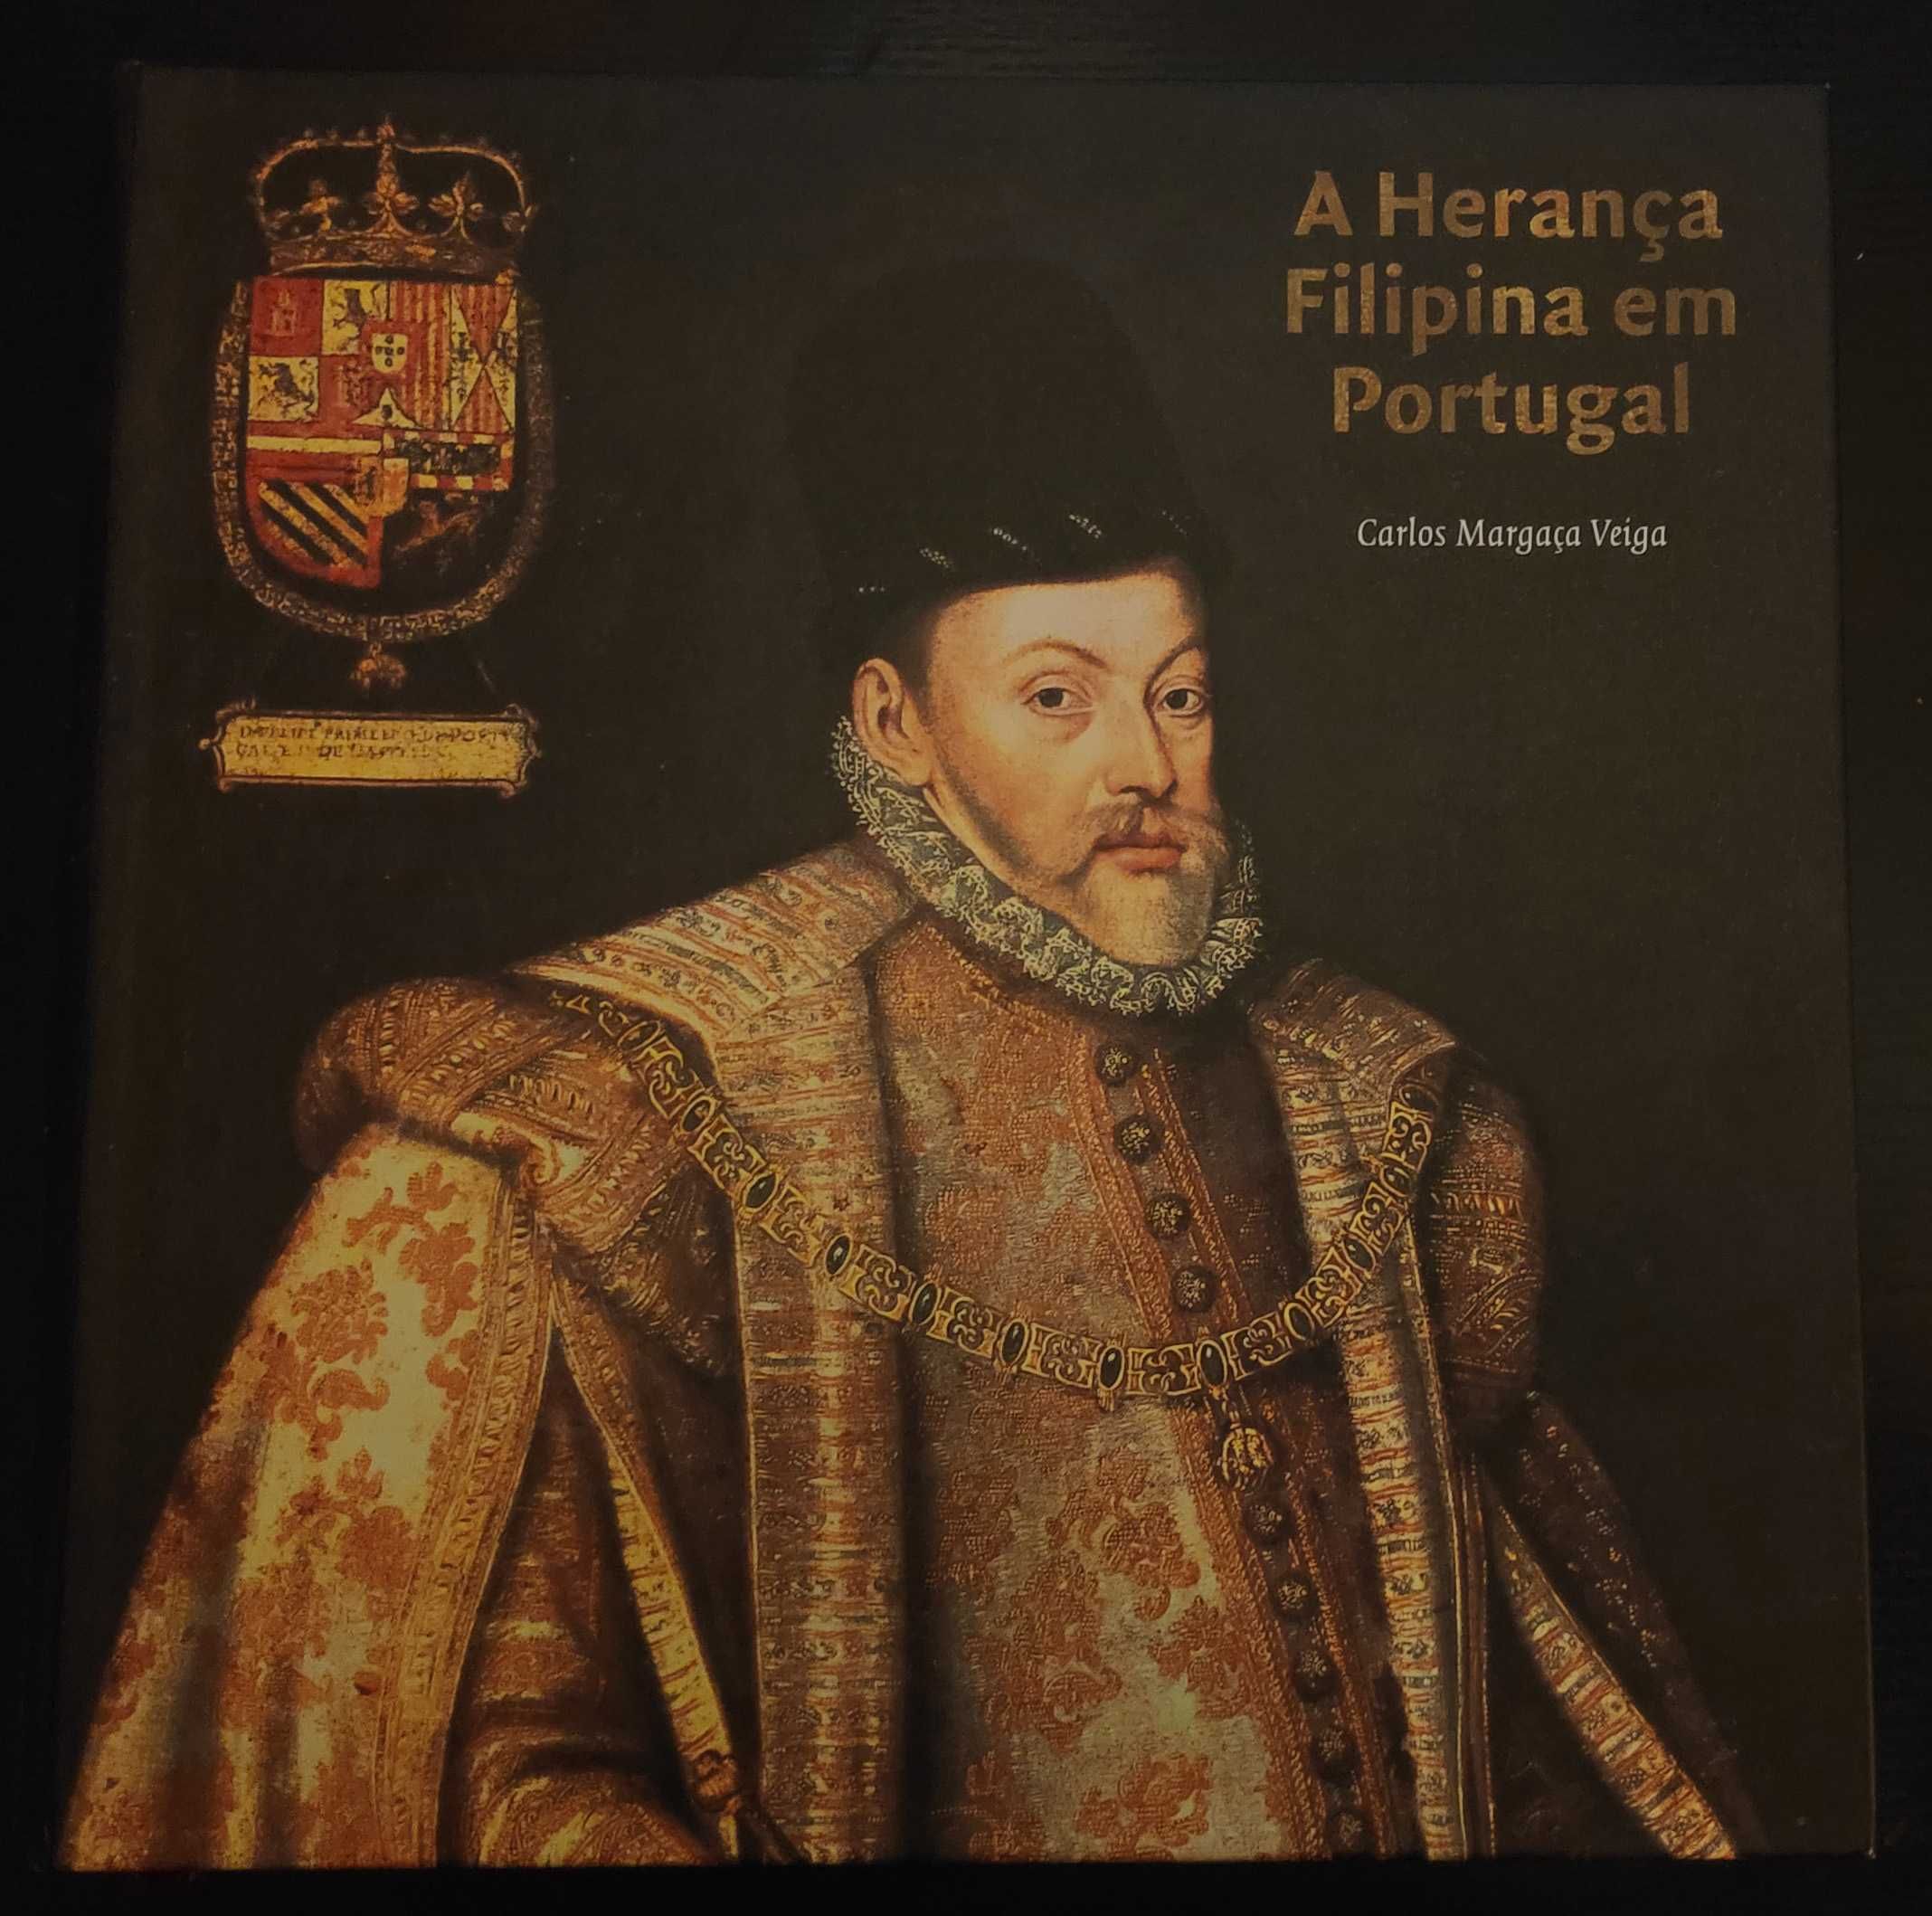 Livro CTT "Herança Filipina em Portugal" com selos